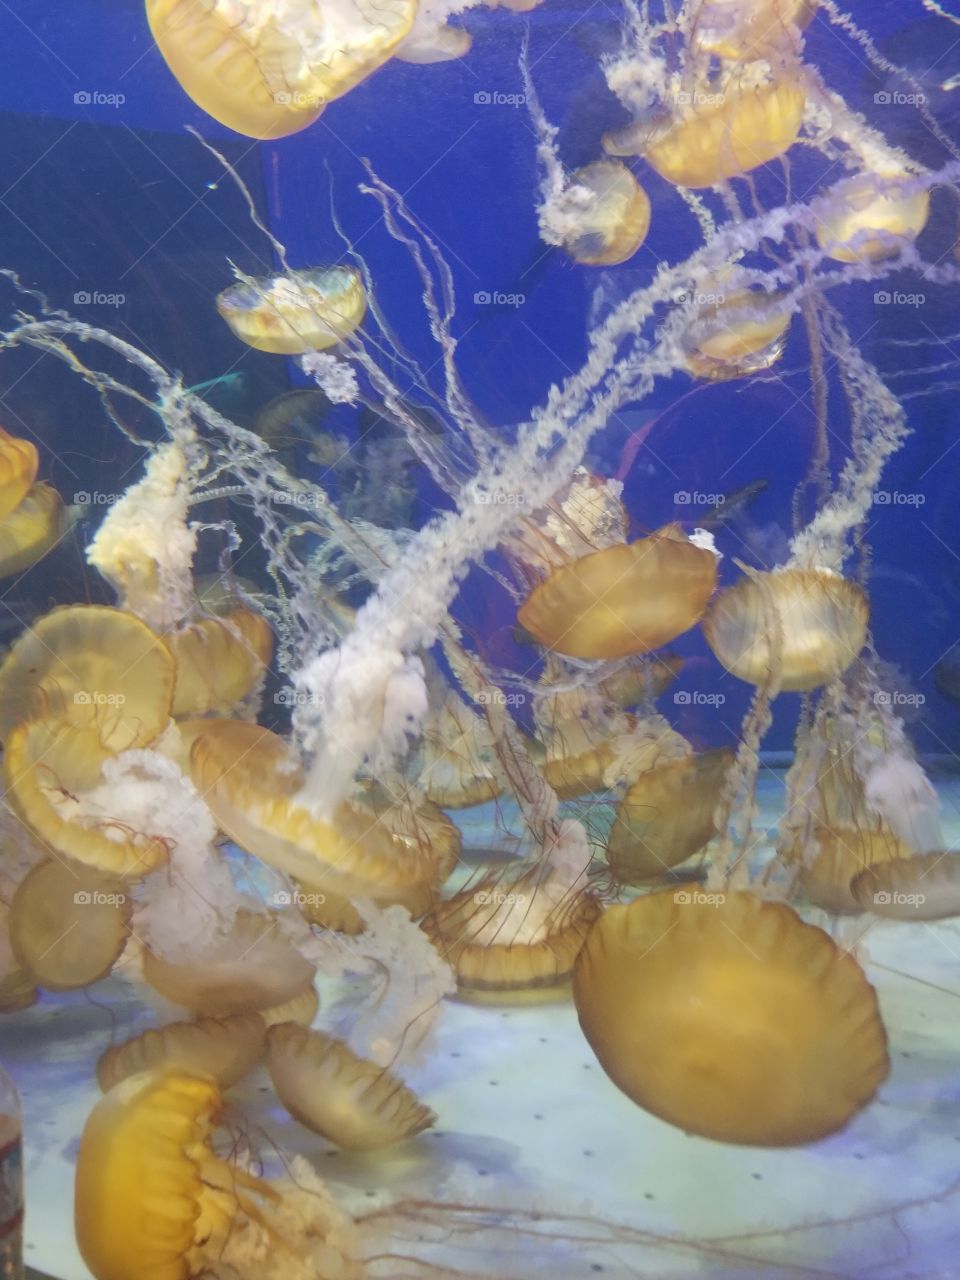 Jelly fish aquarium